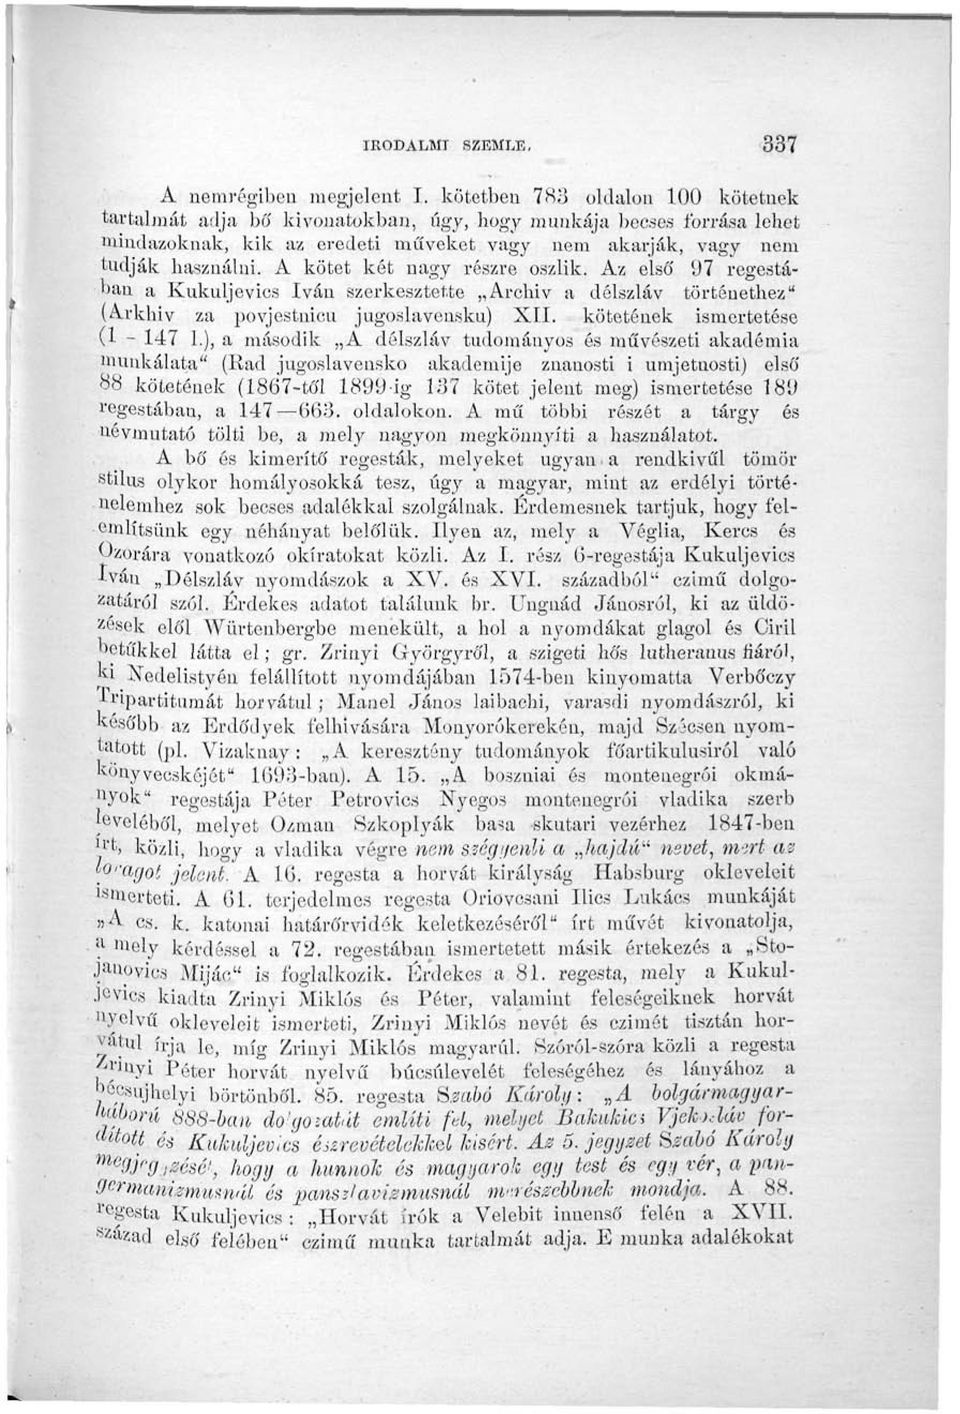 A kötet két nagy részre oszlik. Az első 97 regestáoan a Kukuljevics Iván szerkesztette Archív a délszláv történethez" (Arkhiy za povjestuicu jugoslavensku) XII. kötetének ismertetése (1-147 1.